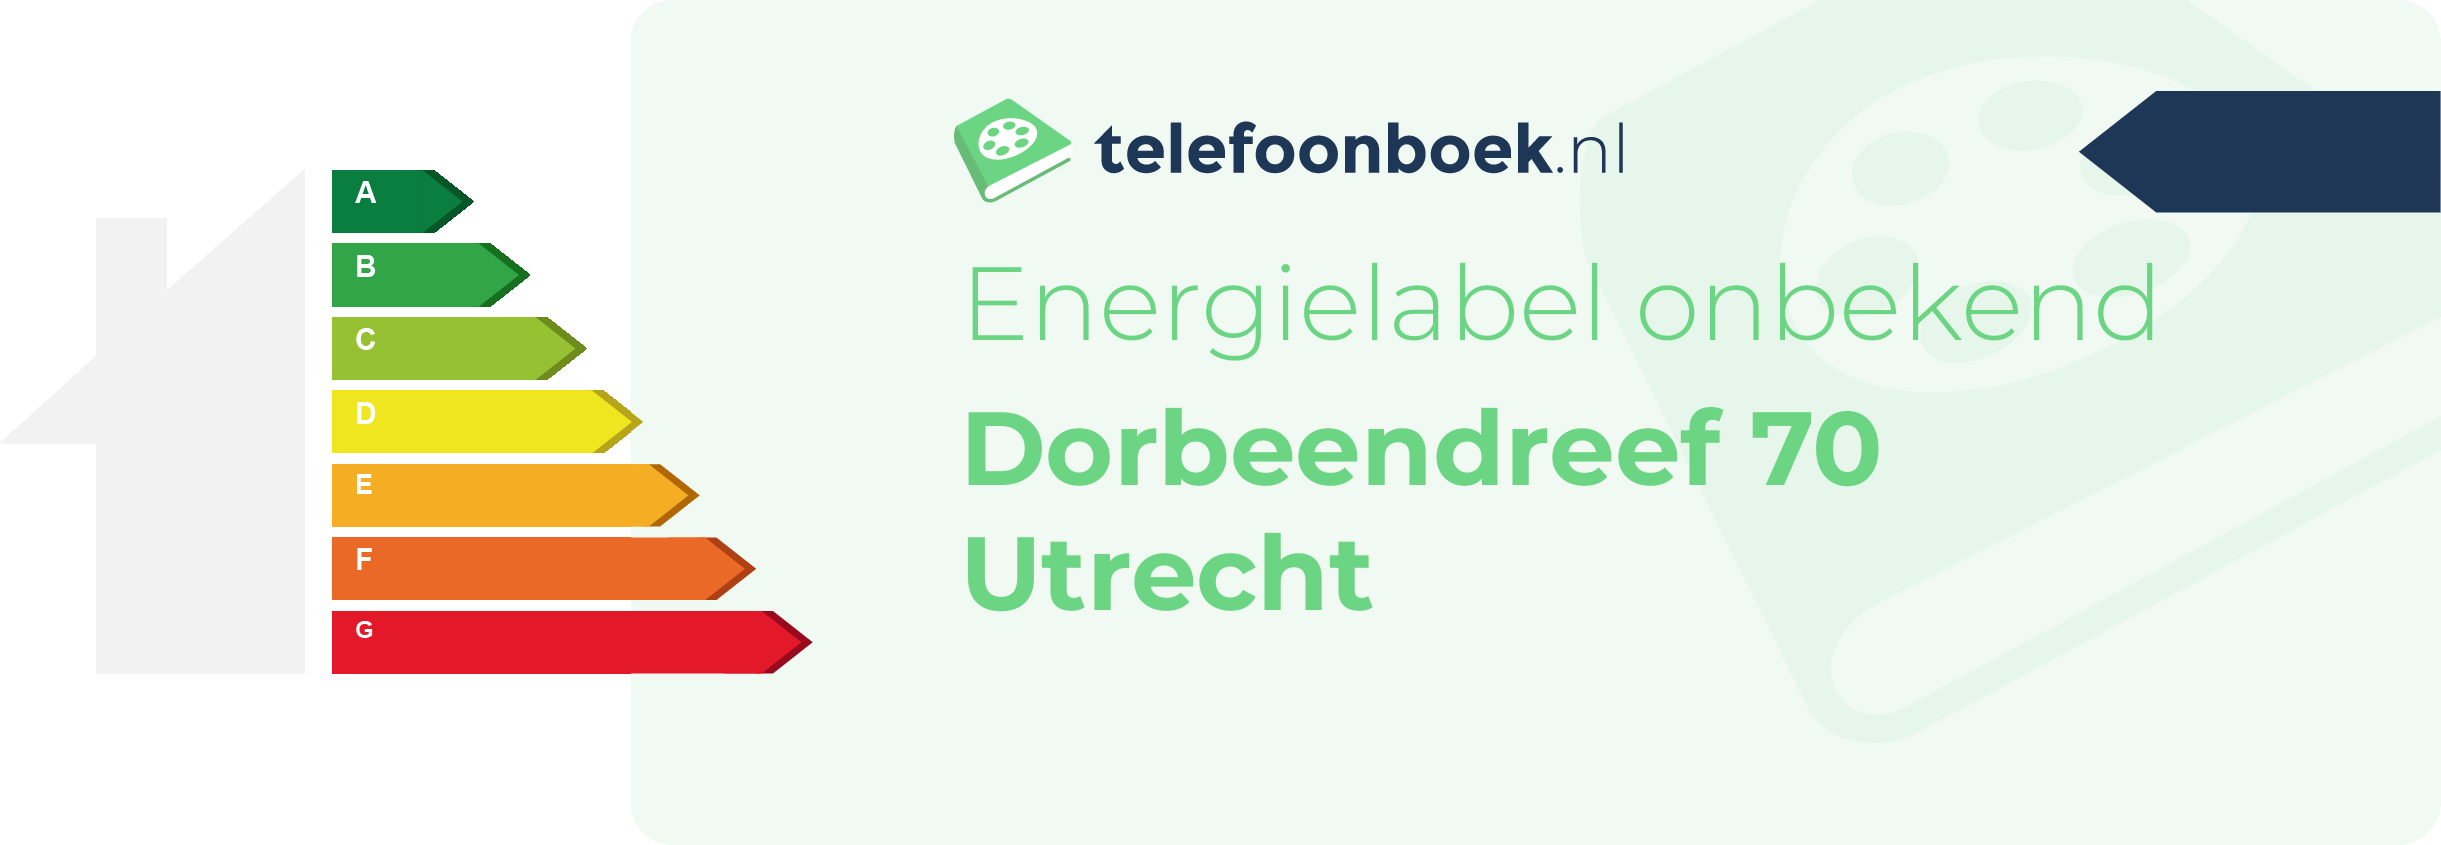 Energielabel Dorbeendreef 70 Utrecht